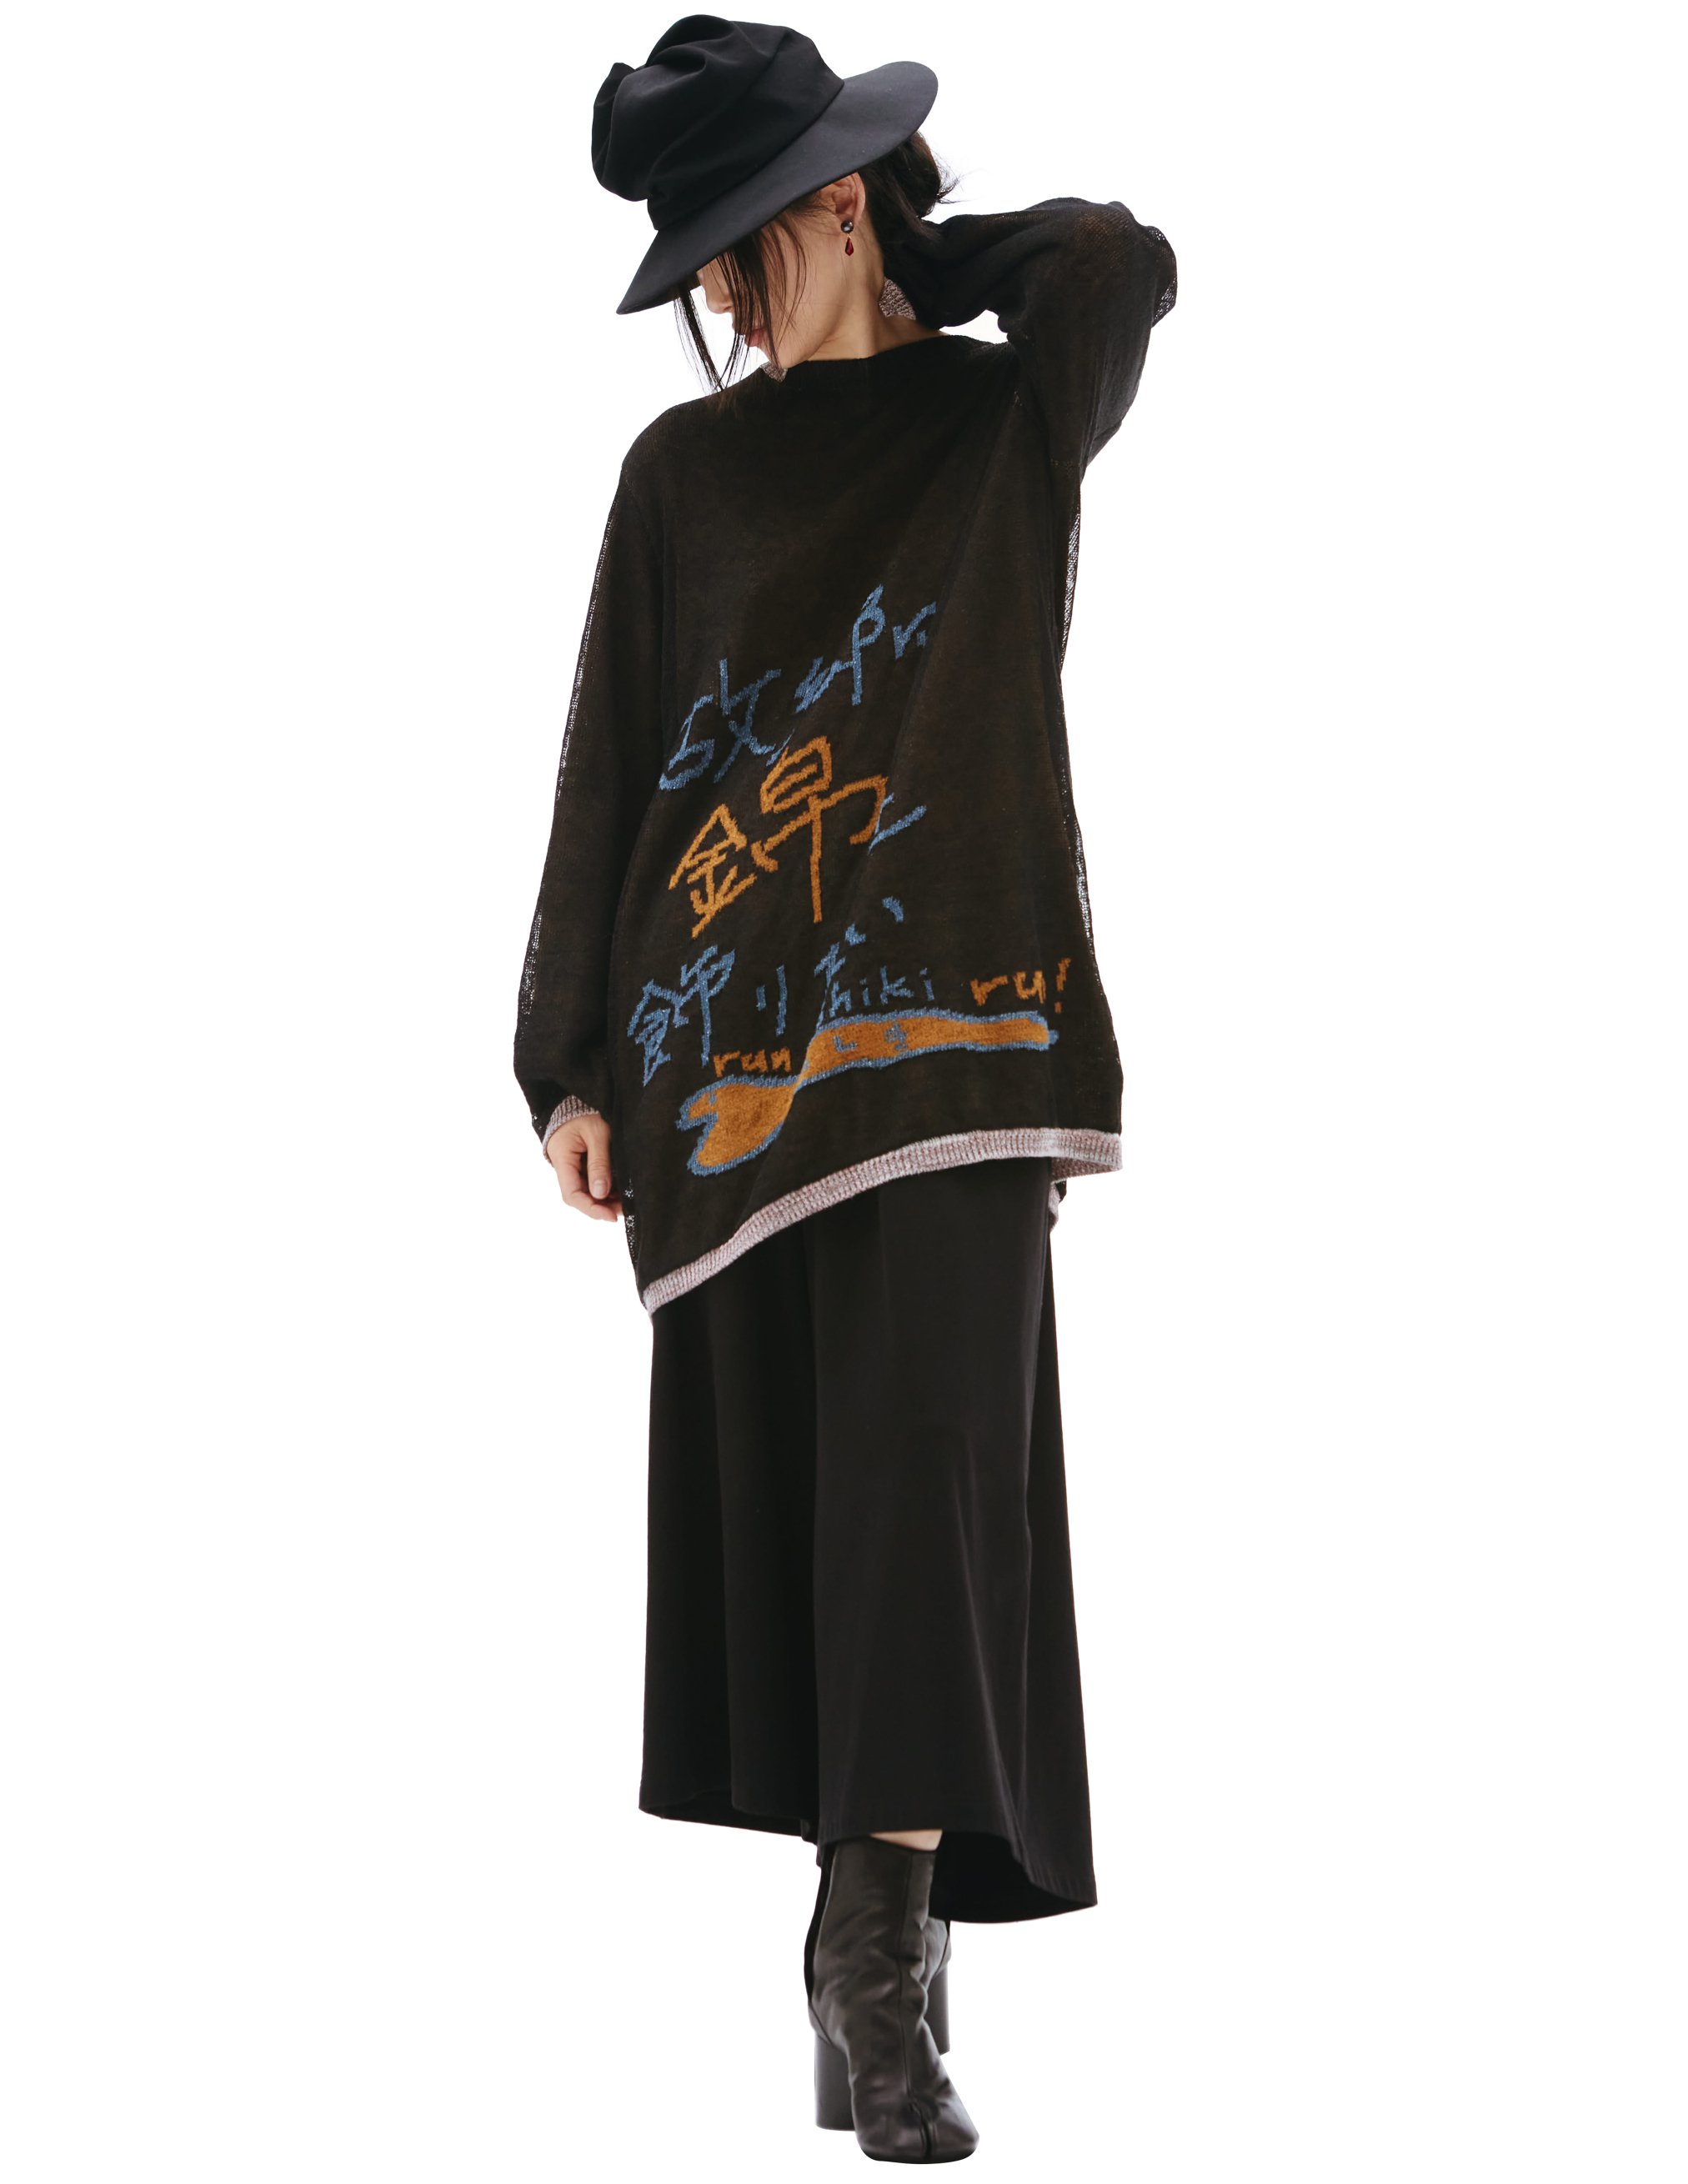 Черный свитер Whats your name Yohji Yamamoto HG-K13-373-1, размер 3 - фото 1